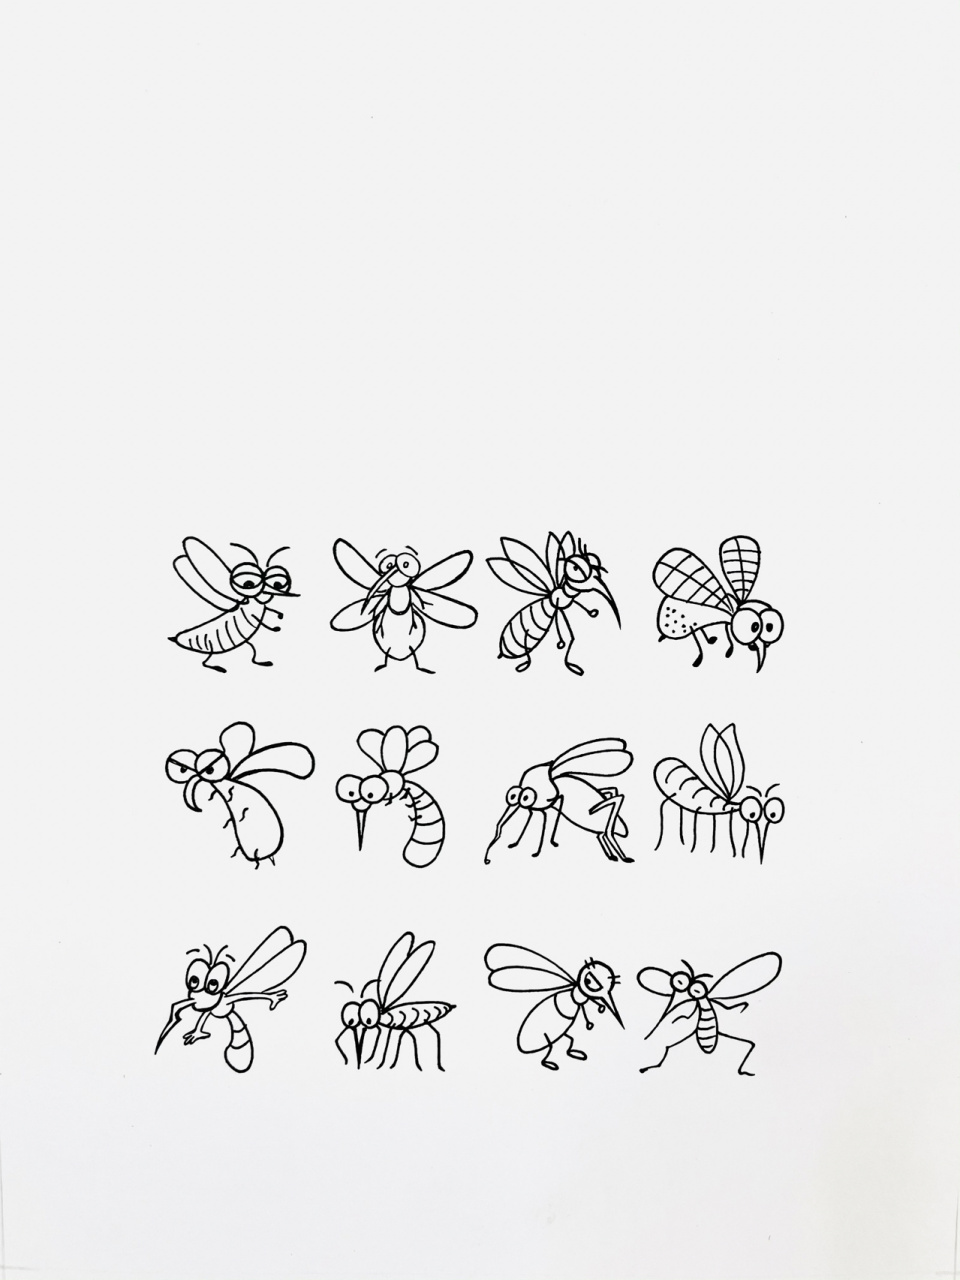 蚊子简笔画 卡通图片图片